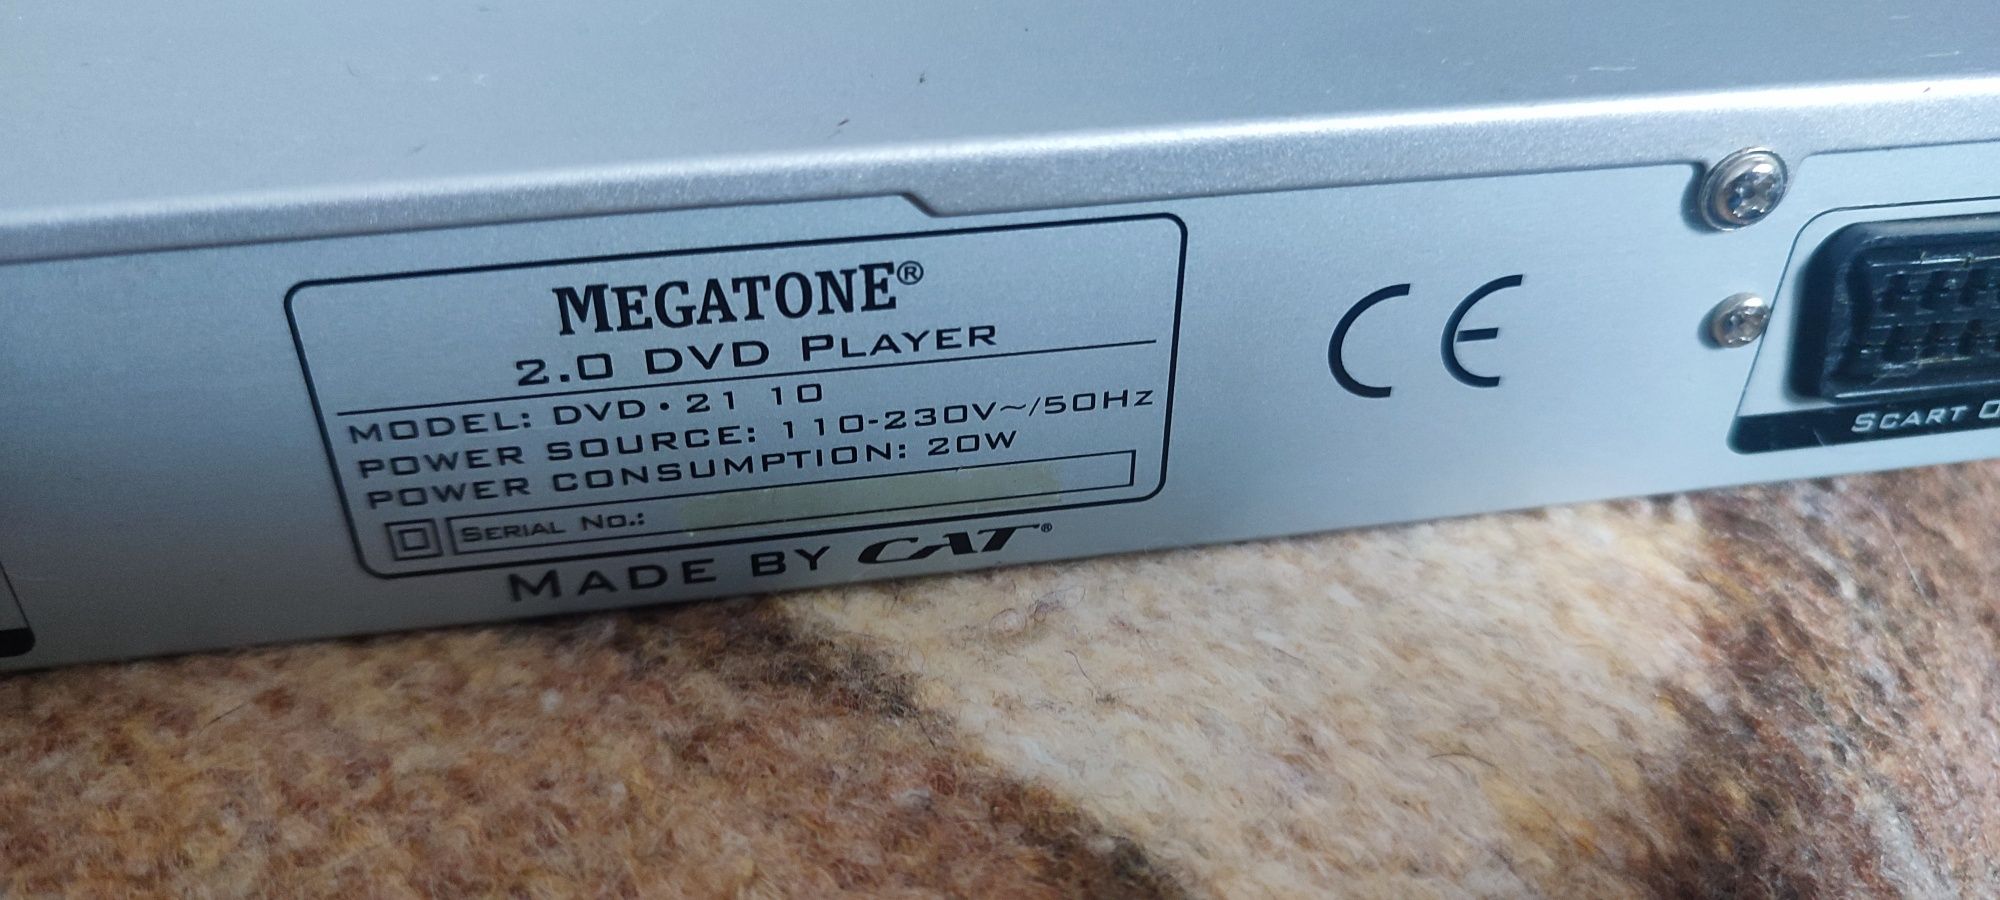 Odtwarzacz DVD Megatone.